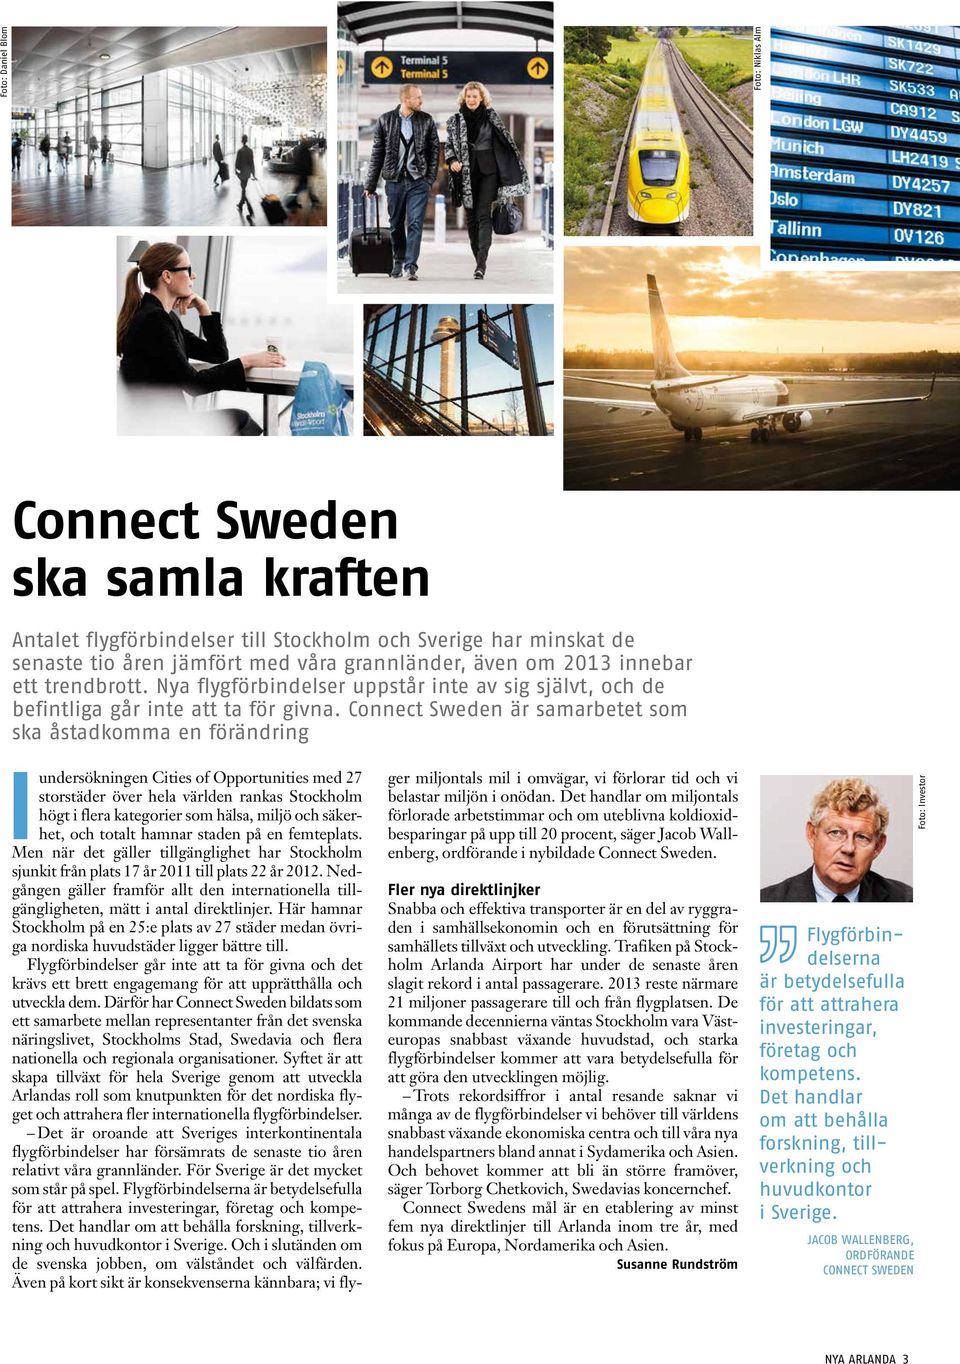 Connect Sweden är samarbetet som ska åstadkomma en förändring I undersökningen Cities of Opportunities med 27 storstäder över hela världen rankas Stockholm högt i flera kategorier som hälsa, miljö